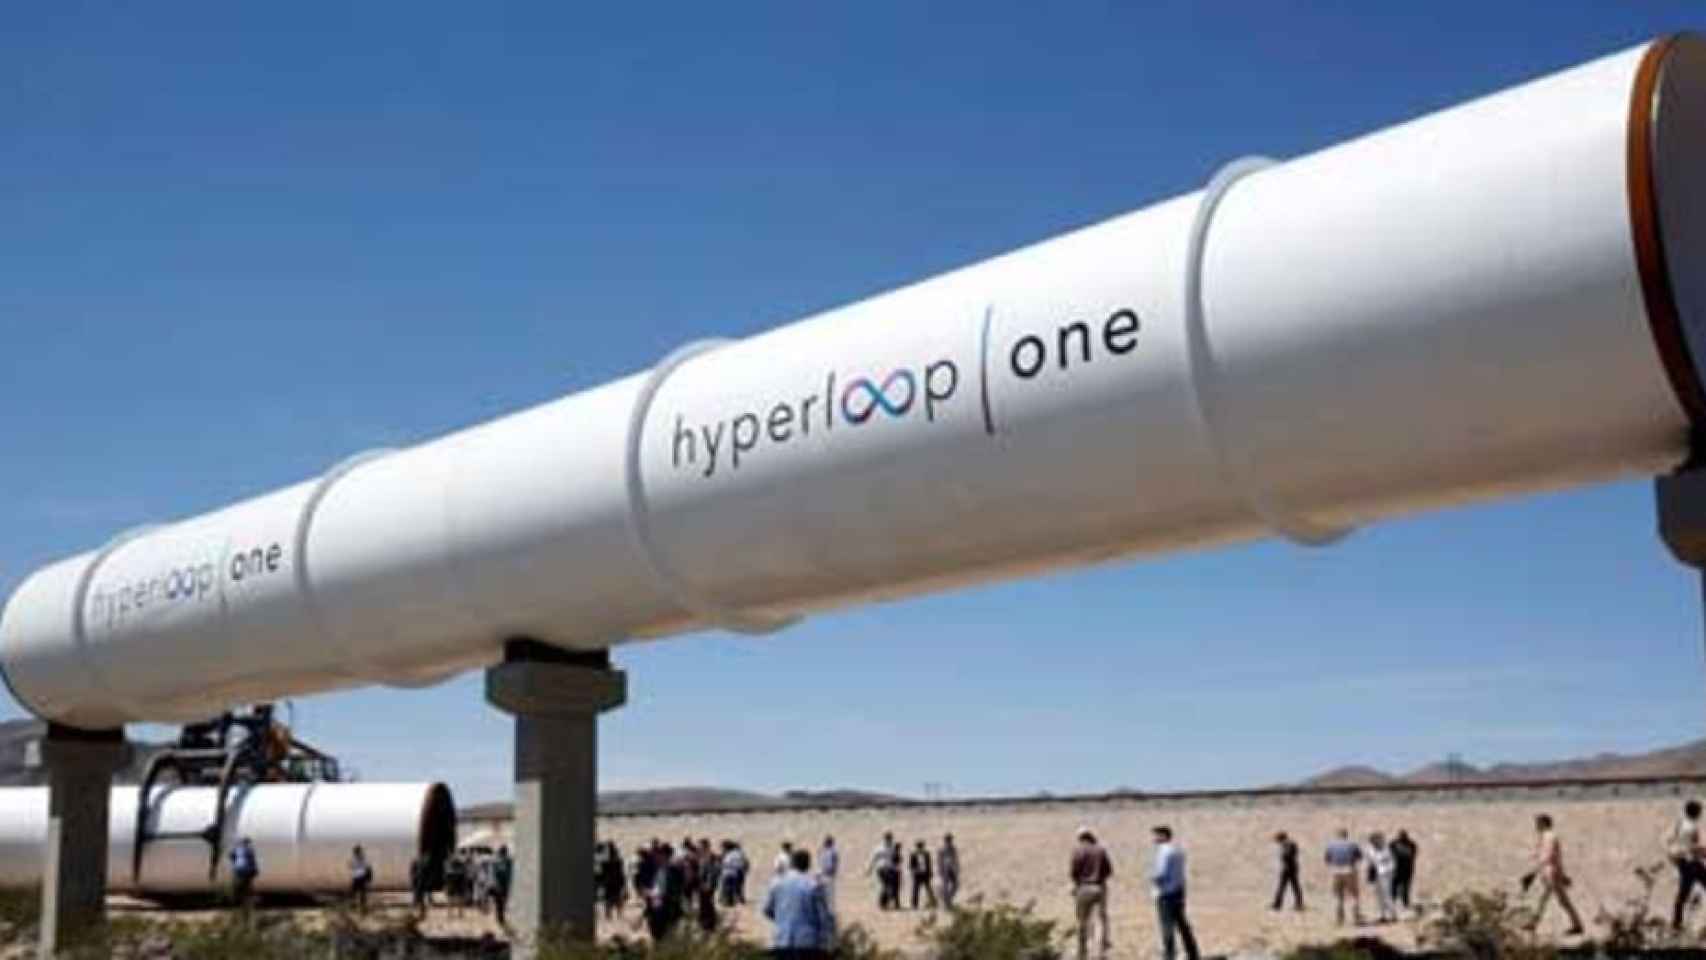 Airtificial fabricará cinco kilómetros de tubo para Hyperloop por 19,9 millones